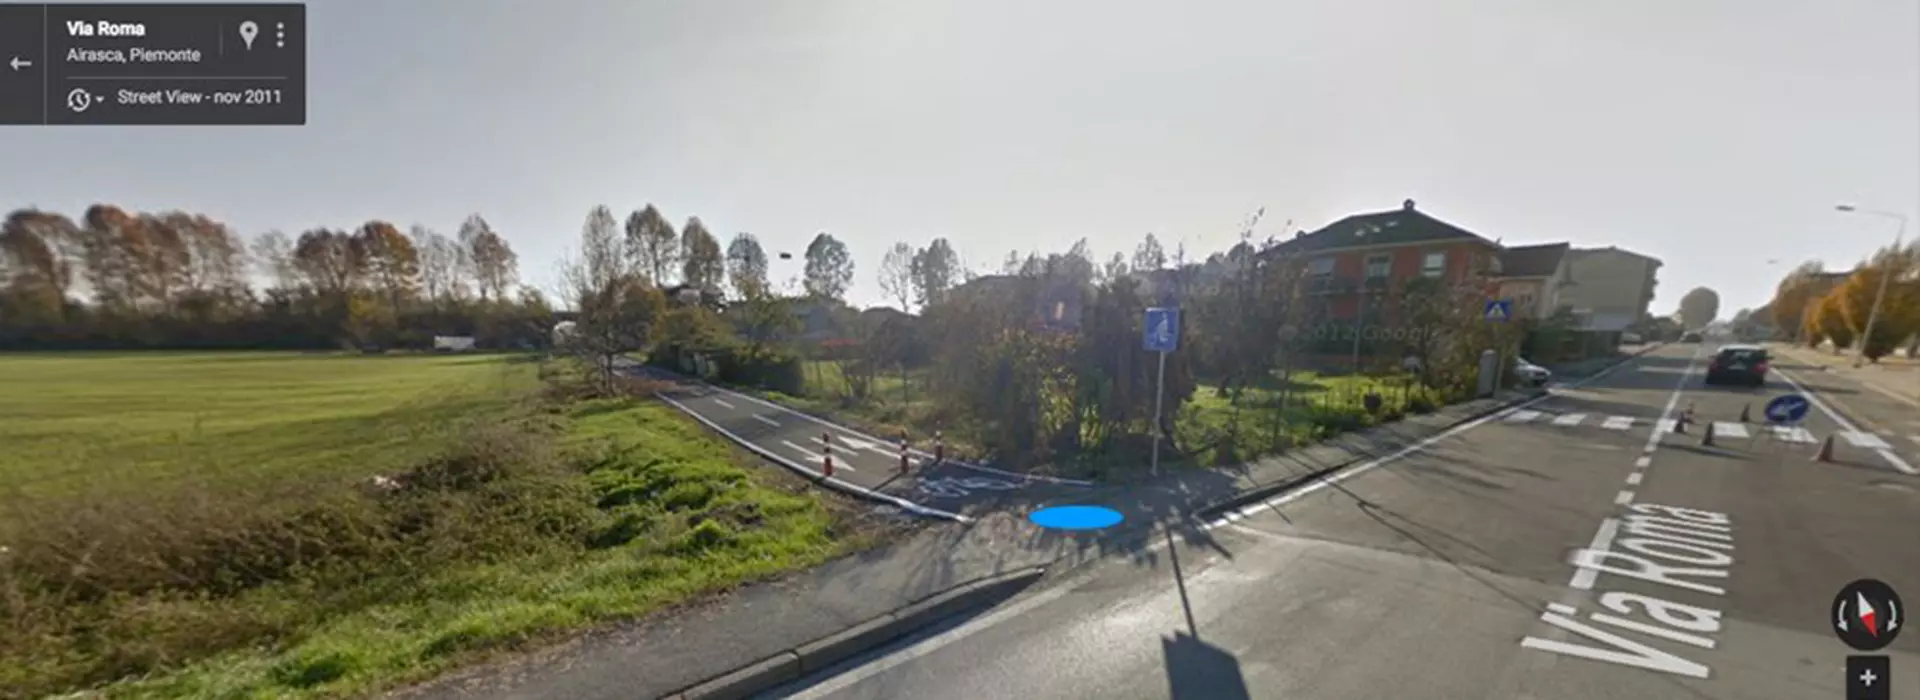 Screenshot di Google maps di Via Roma ad Airasca, strada percorsa per la via delle risorgive 